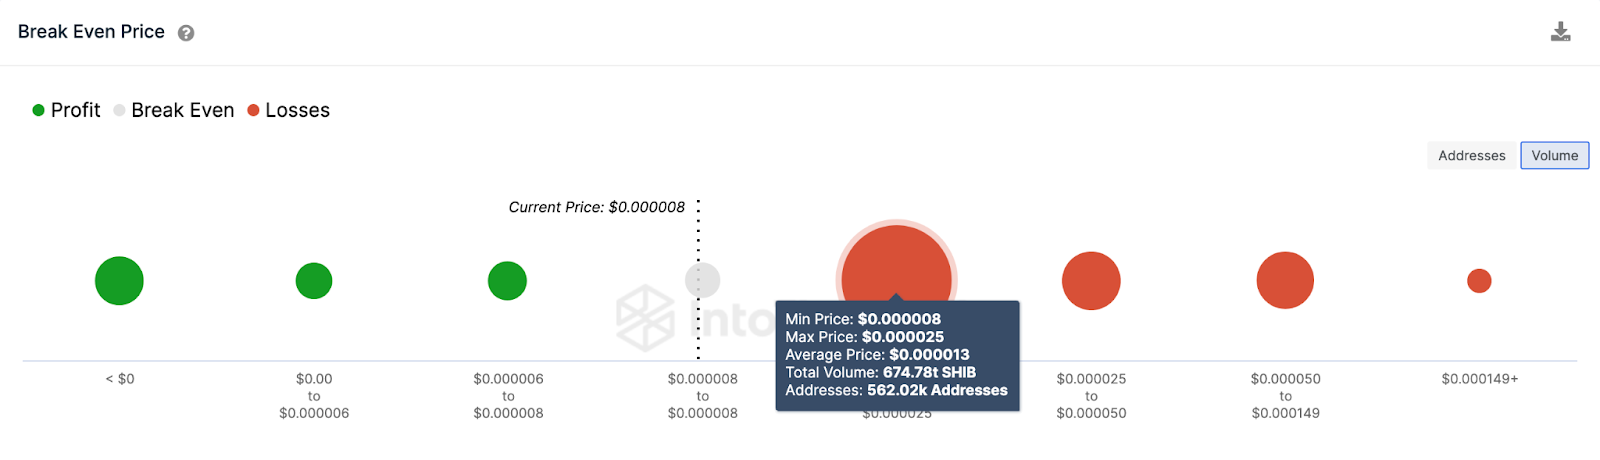 Shiba Inu (SHIB) Price Prediction. June 2023 | Break-Even Price Distribution 